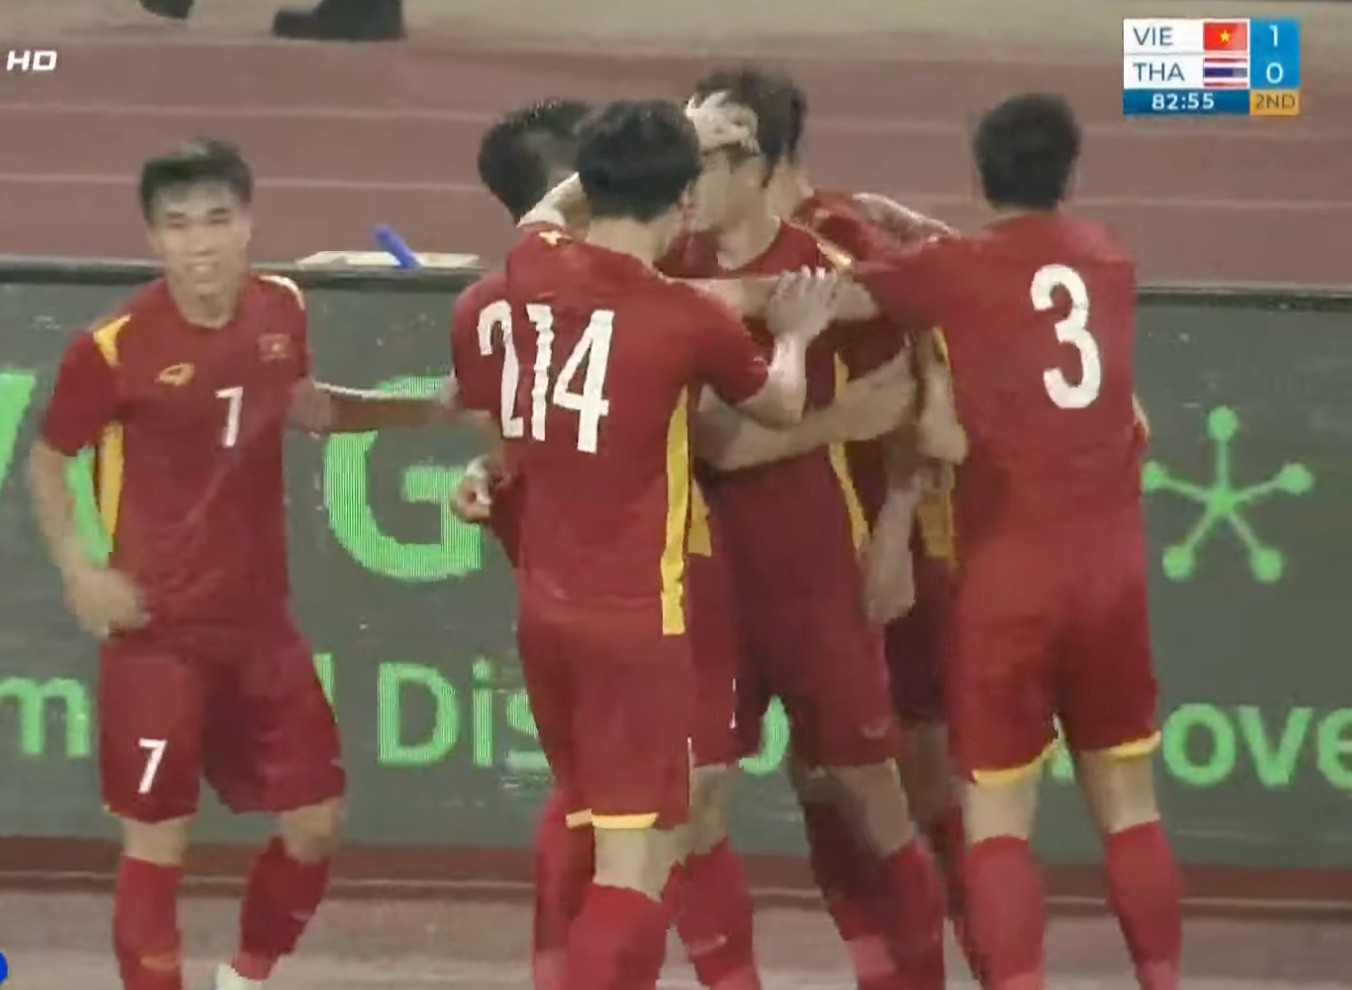 Sao Việt ăn mừng chiến thắng U23 Việt Nam: Người bật khóc vì xúc động, người lên đồ xuống đường thâu đêm - ảnh 1